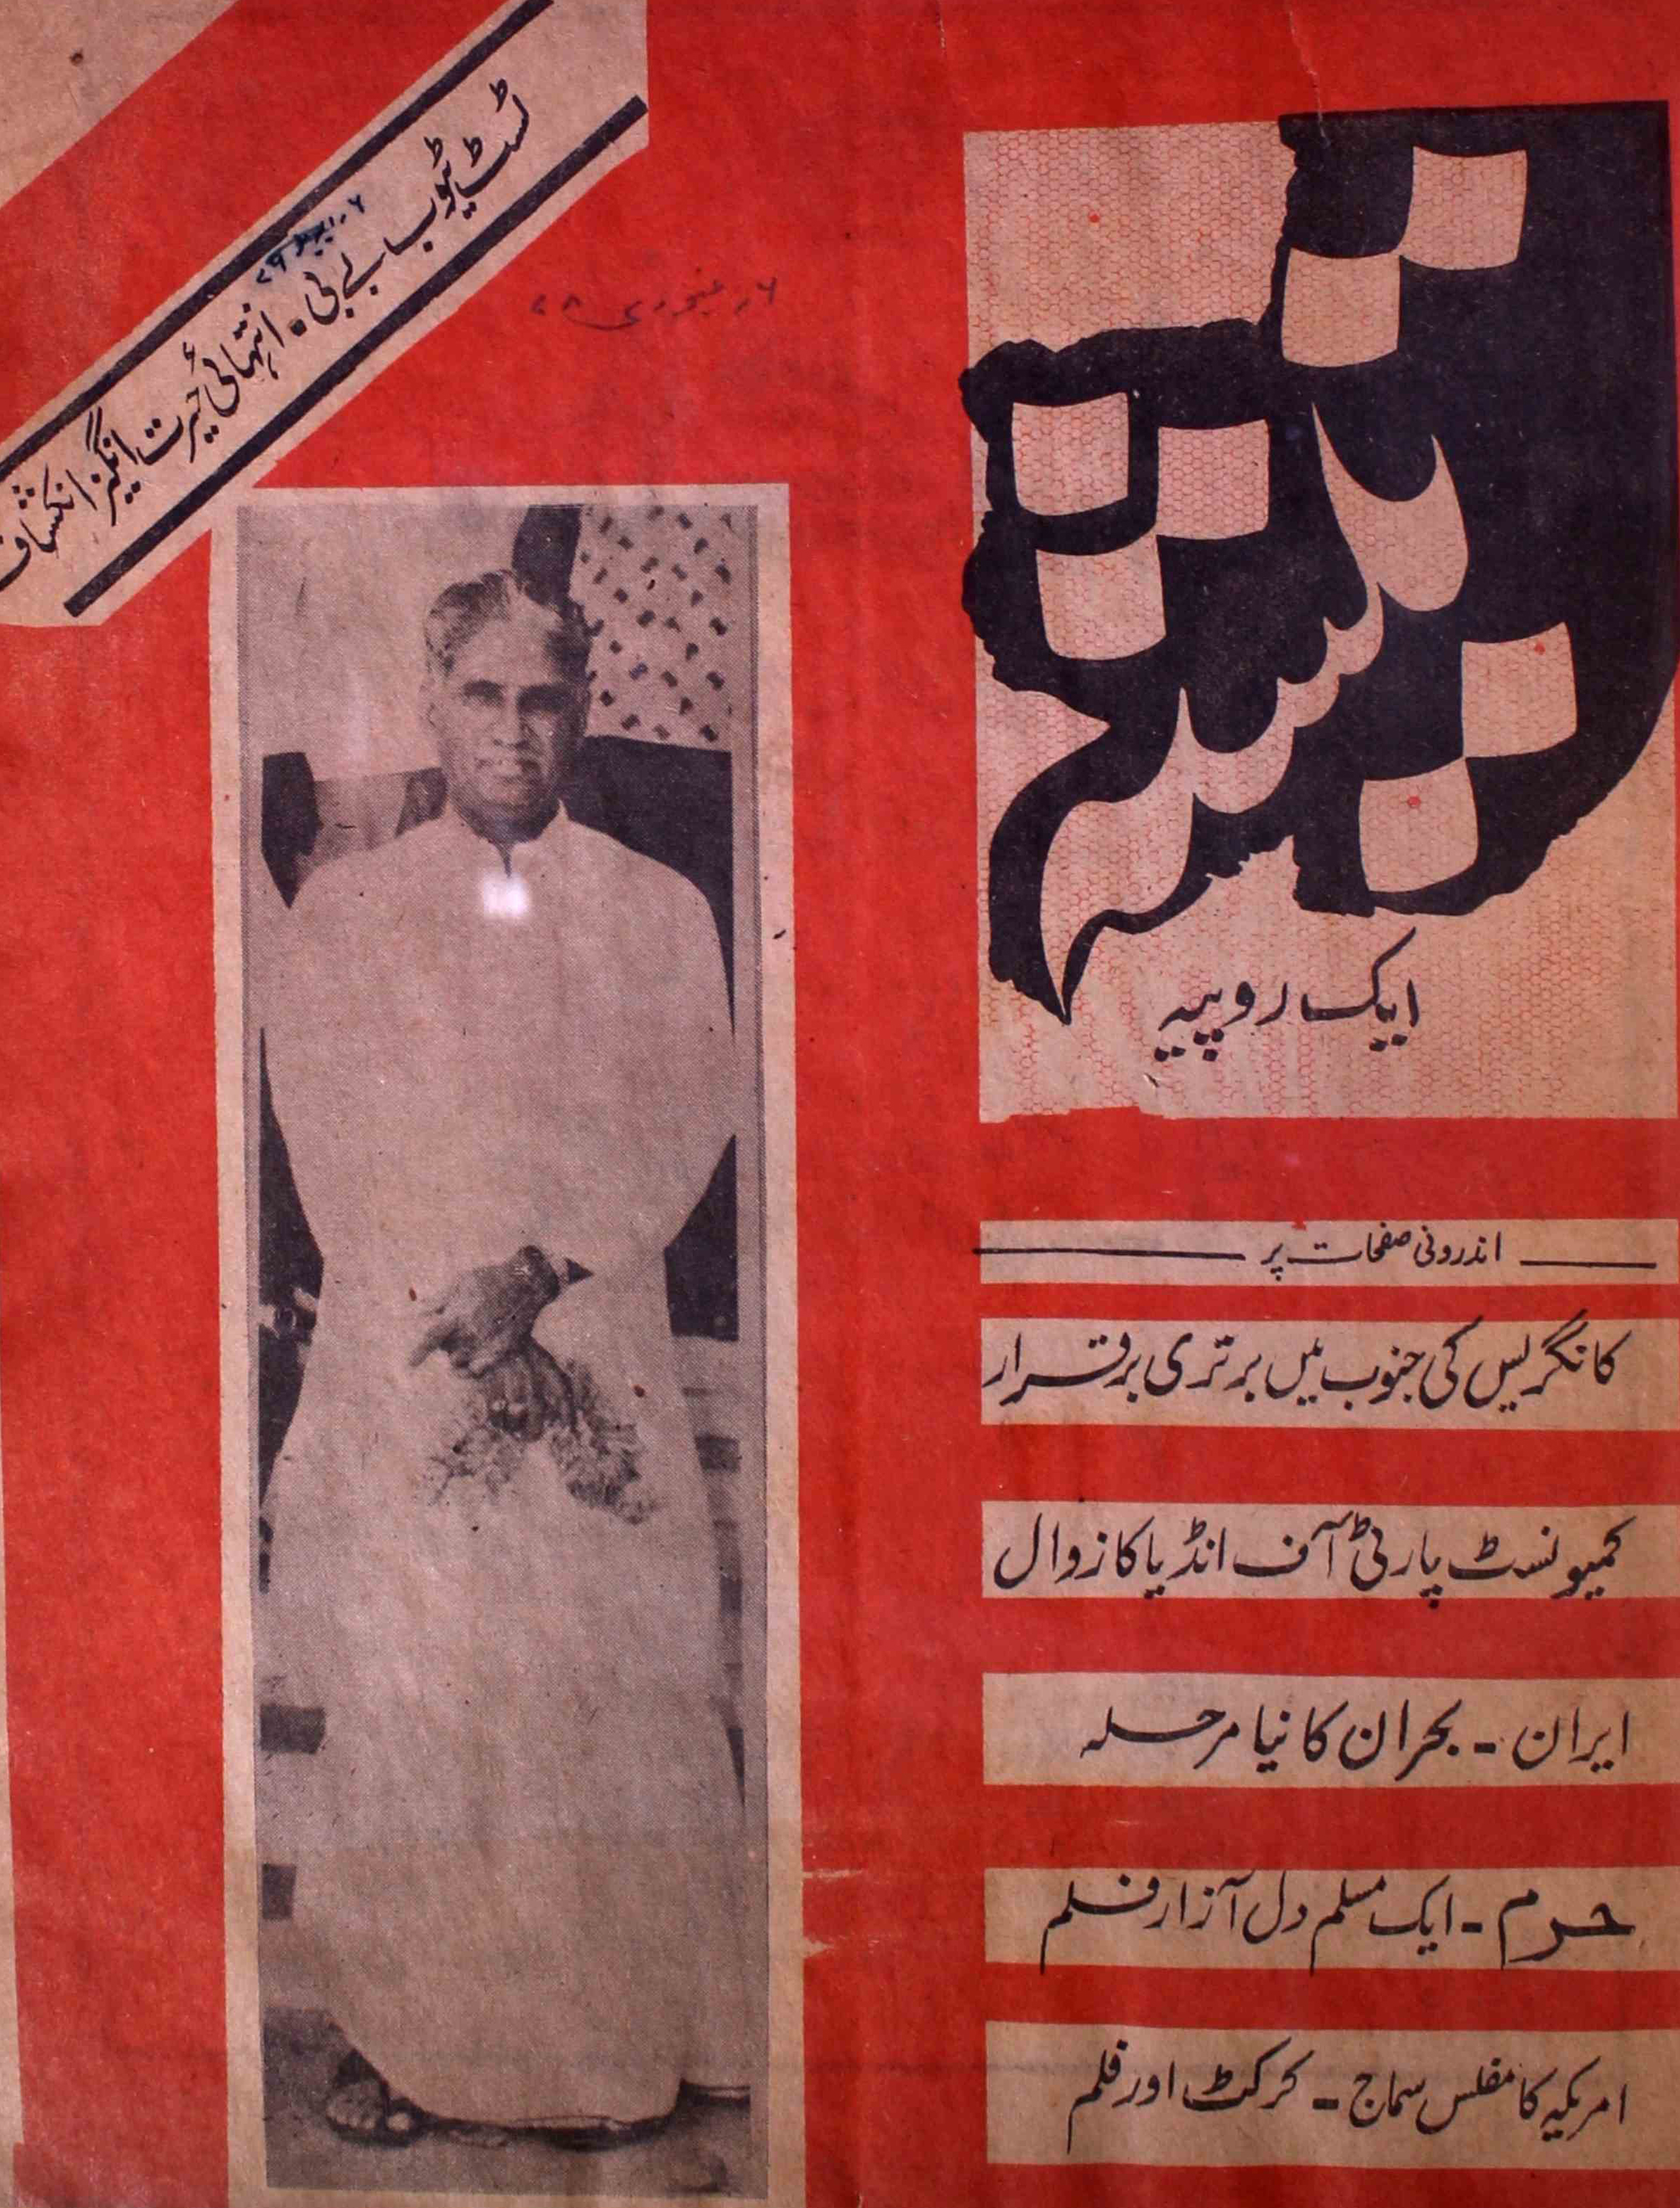 teesha-shumara-number-002-hasan-farrukh-magazines